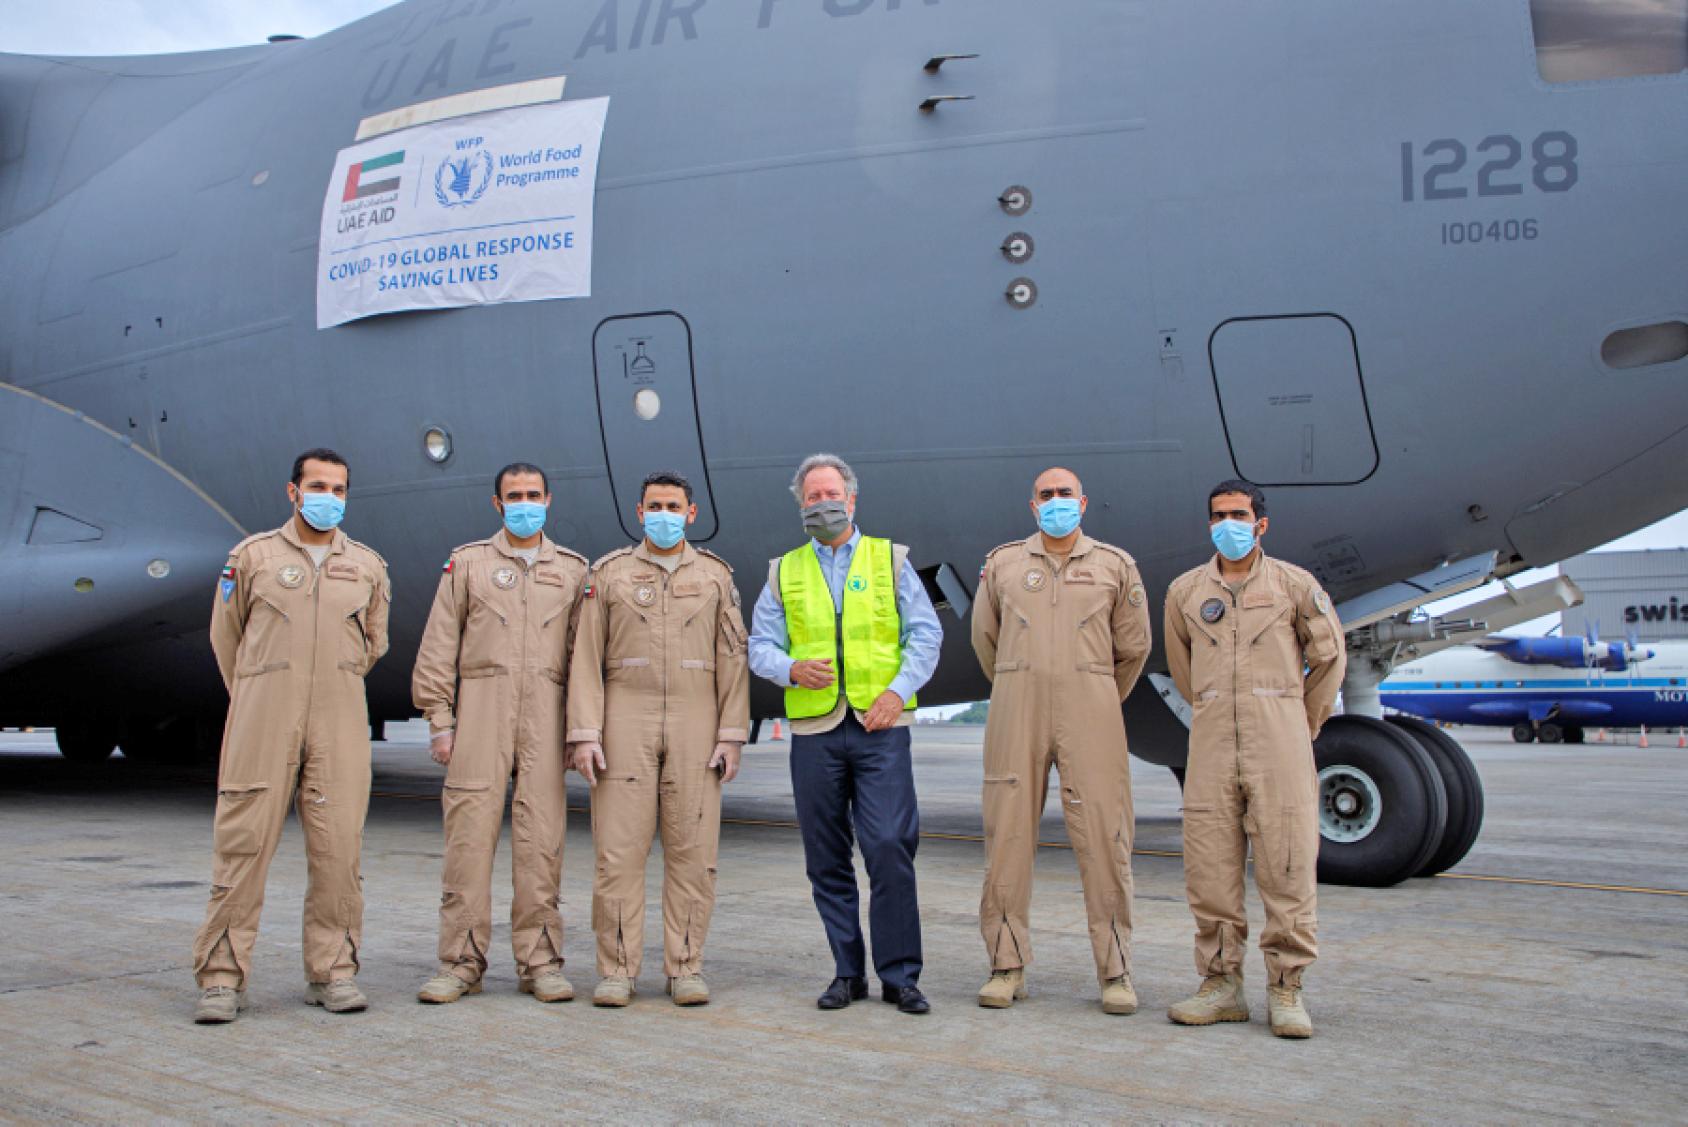 David Beasley, le Directeur exécutif du Programme alimentaire mondial (PAM) de l’ONU, photographié avec plusieurs autres hommes devant un transporteur C-17 peu après son arrivée à Accra, au Ghana. 